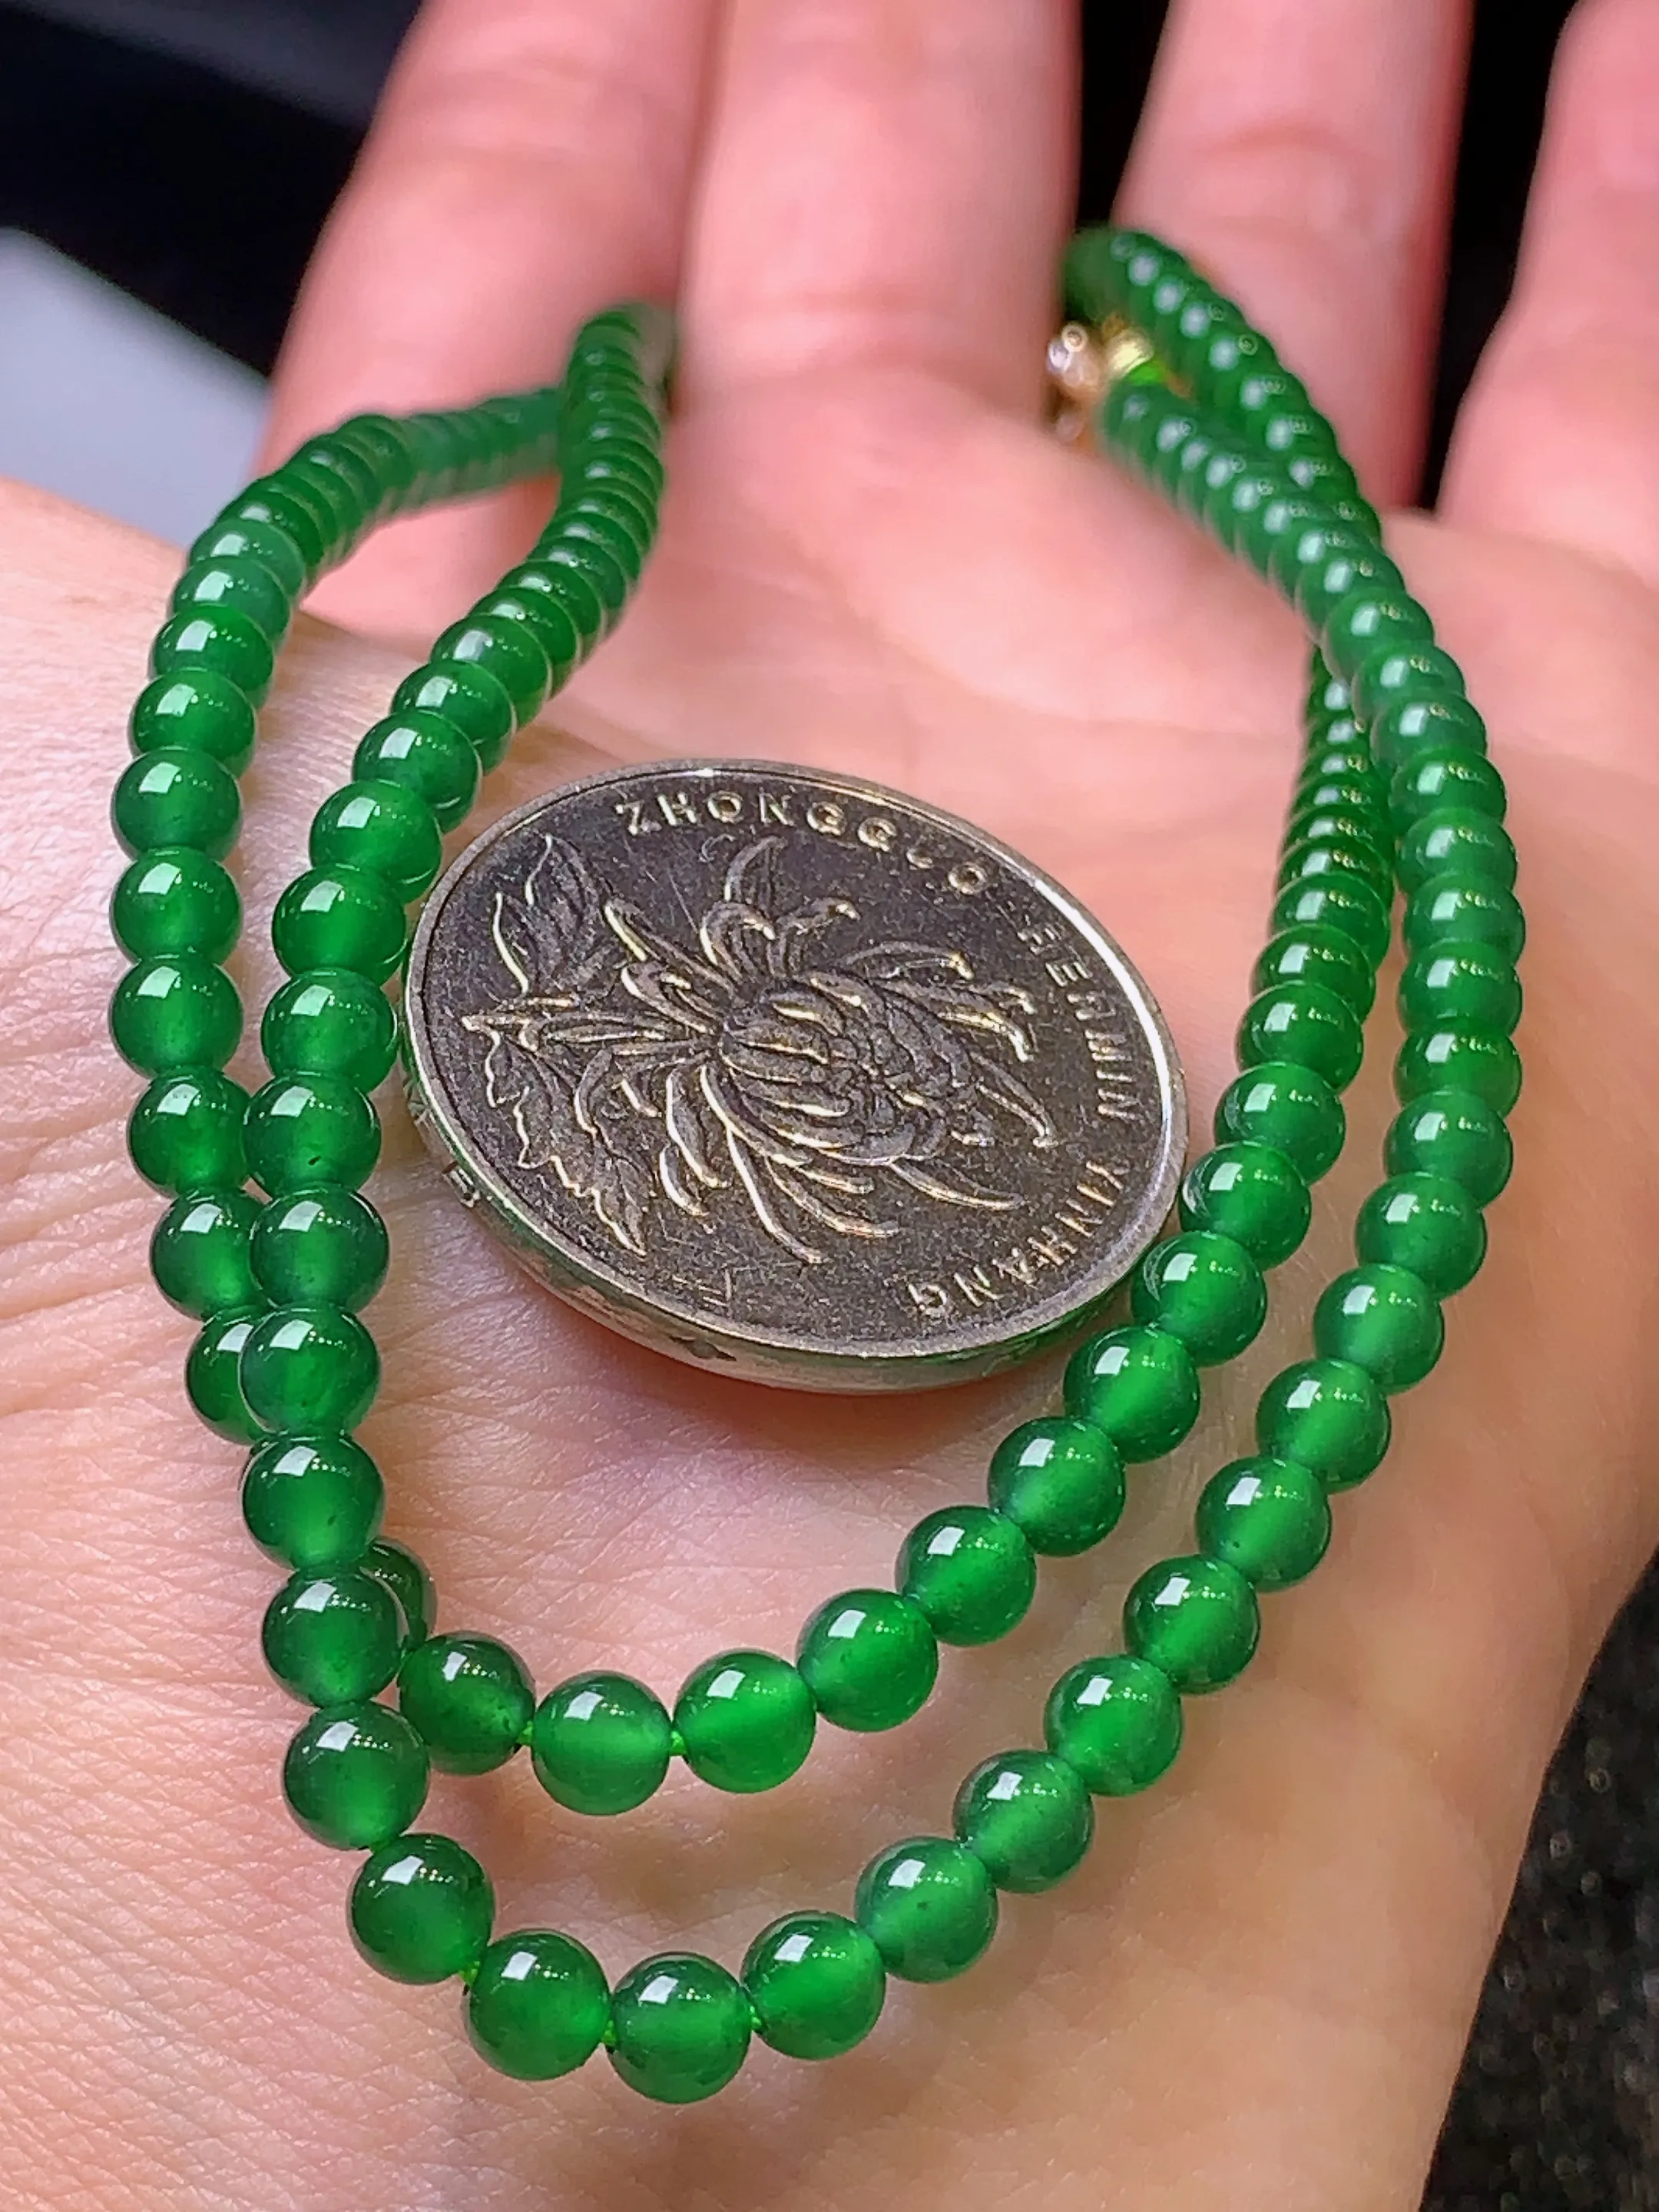 满绿圆珠项链 玉质细腻   色泽艳丽 圆润饱满 款式新颖时尚精美 取一尺寸4.1